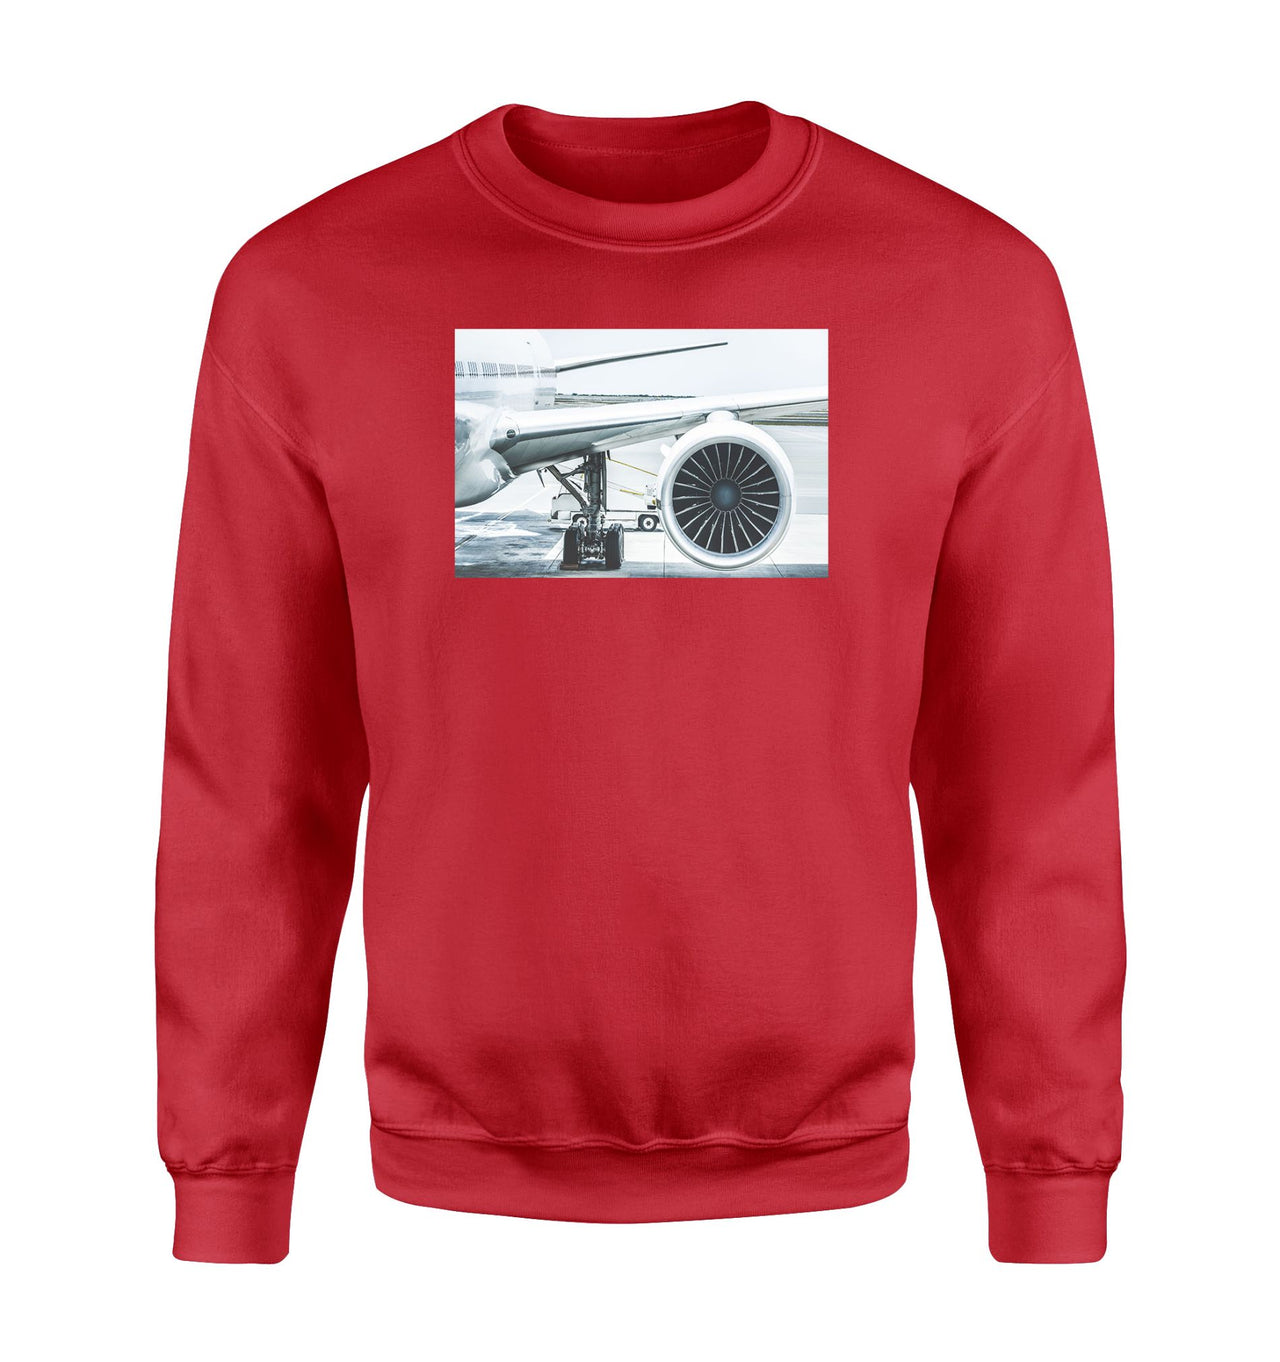 Amazing Aircraft & Engine Designed Sweatshirts